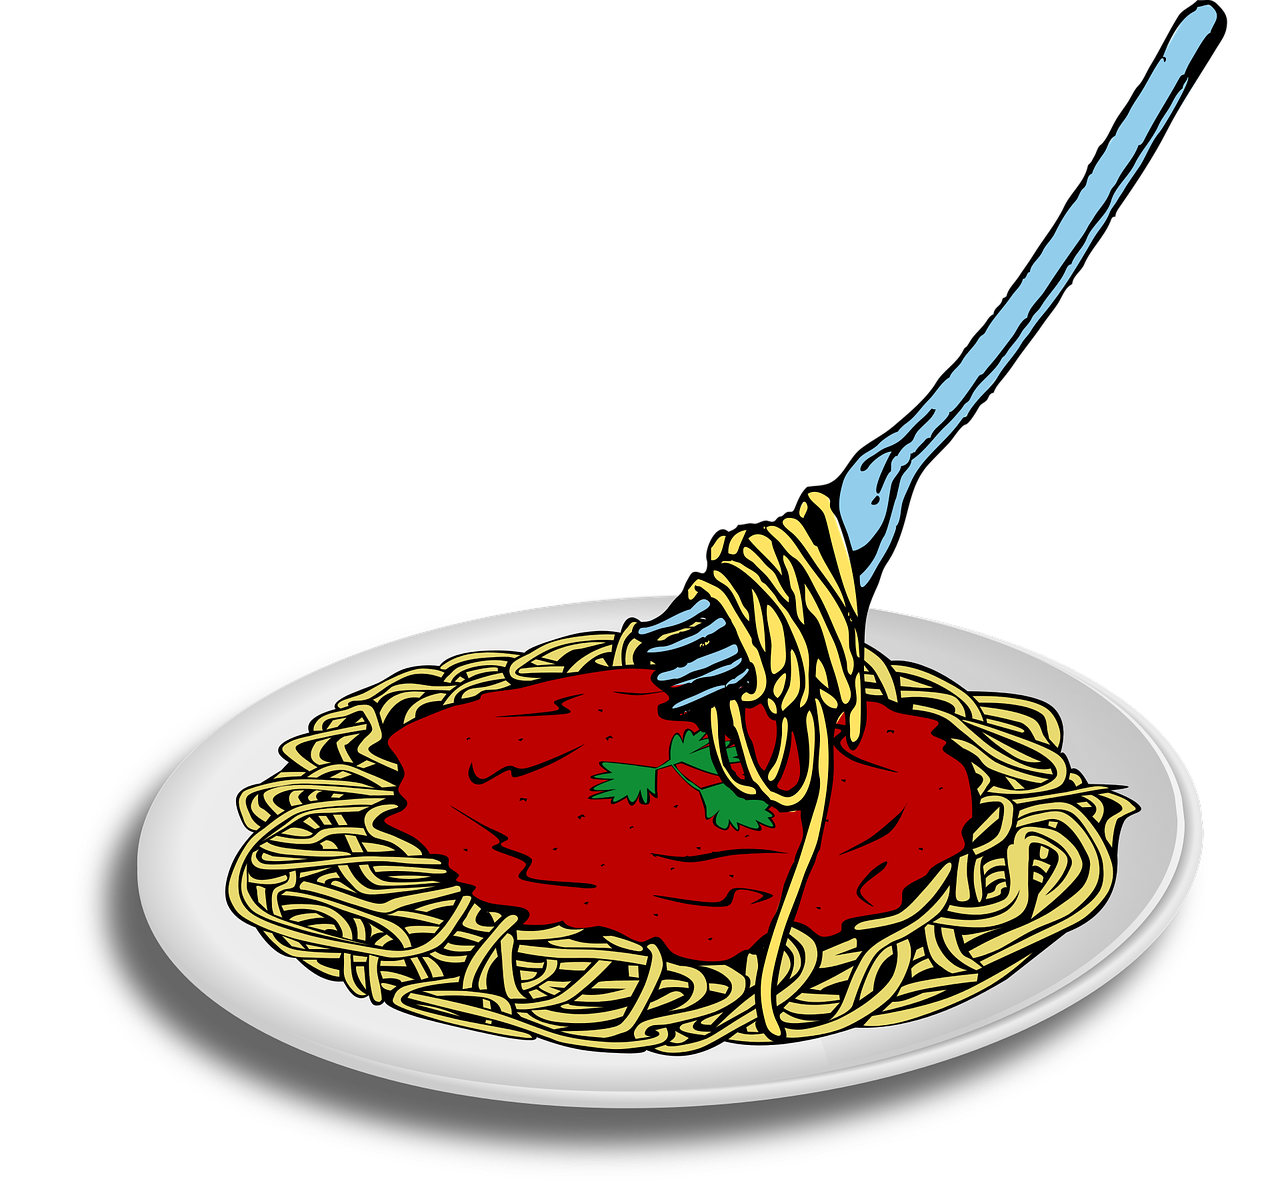 jar clipart pasta sauce